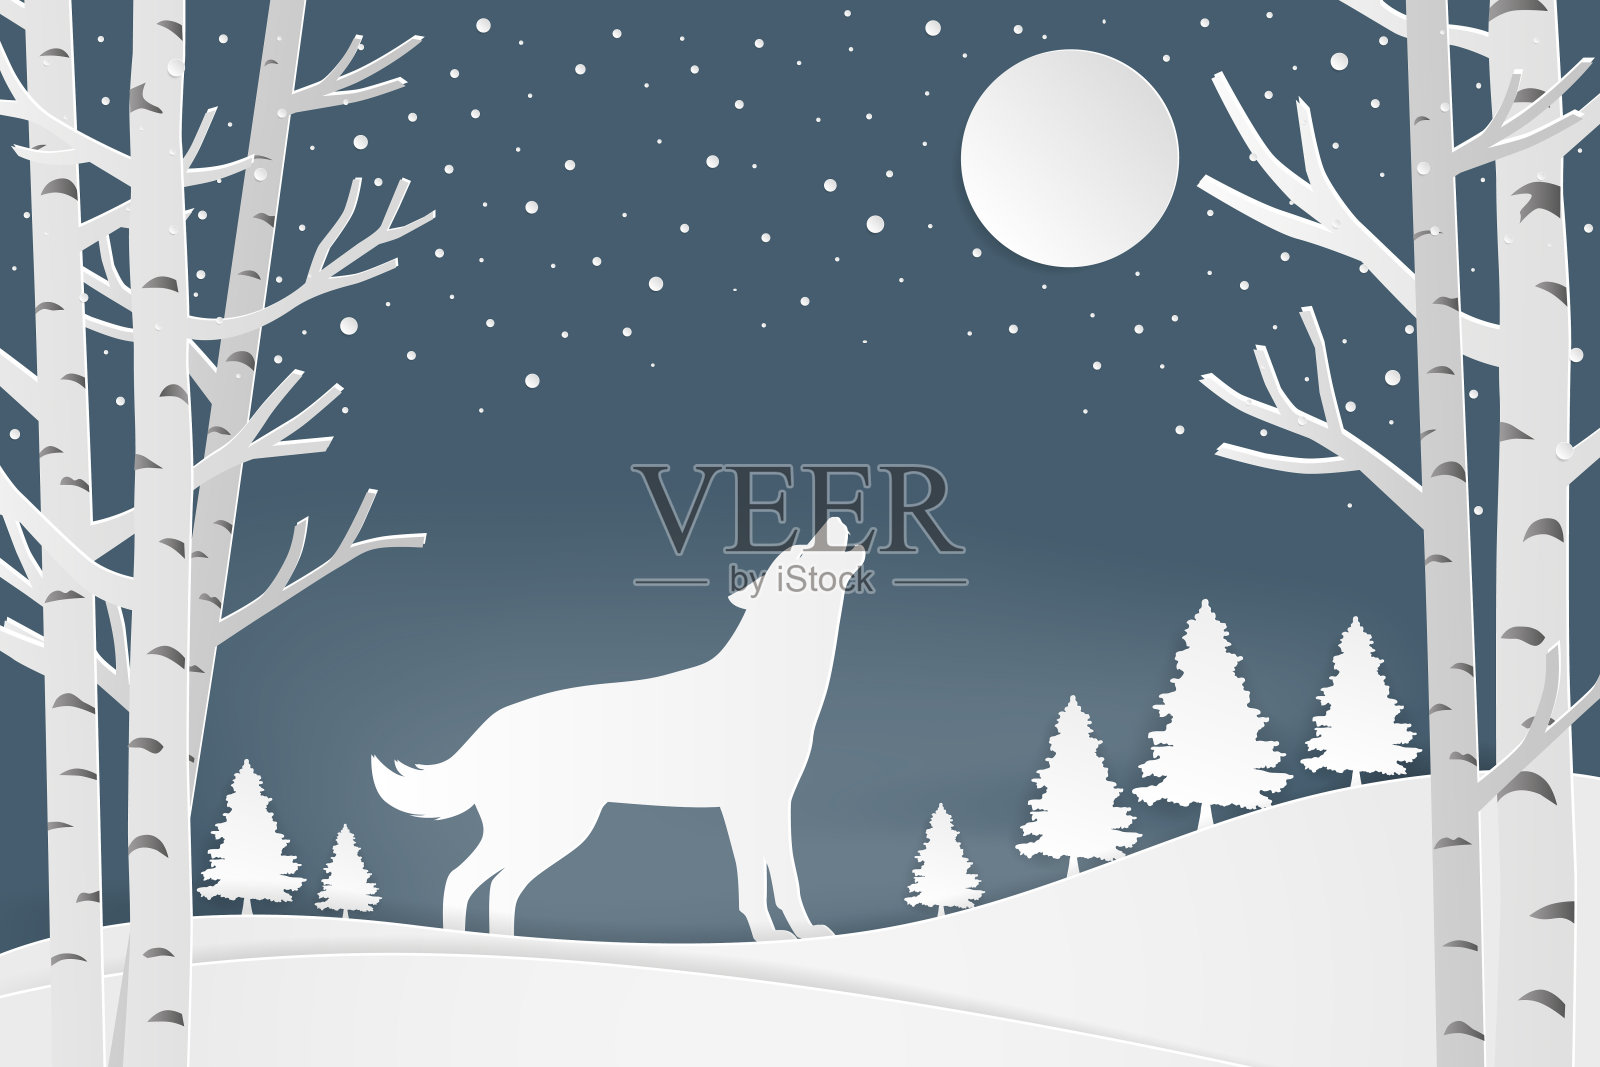 圣诞快乐，并附上新年贺卡。以驯鹿和冬季为背景的2018年新年快乐文字设计。纸艺术风格。矢量插图。插画图片素材